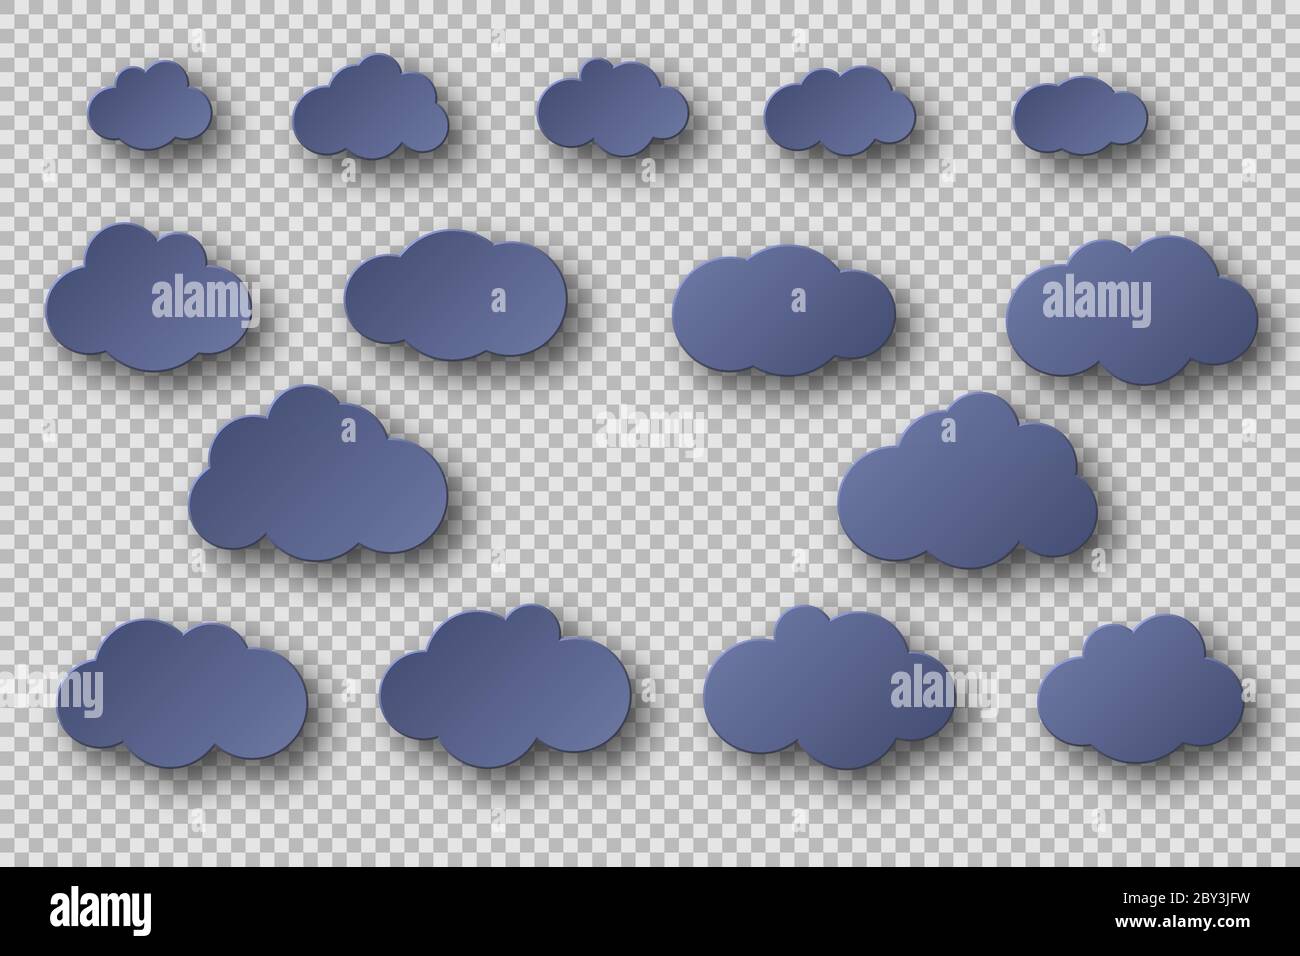 Papier geschnitten blaue Wolken Sammlung. 3d-Effekt mit Schatten. Dekorative Elemente auf transparentem Hintergrund isoliert, Vektor-Illustration. Stock Vektor